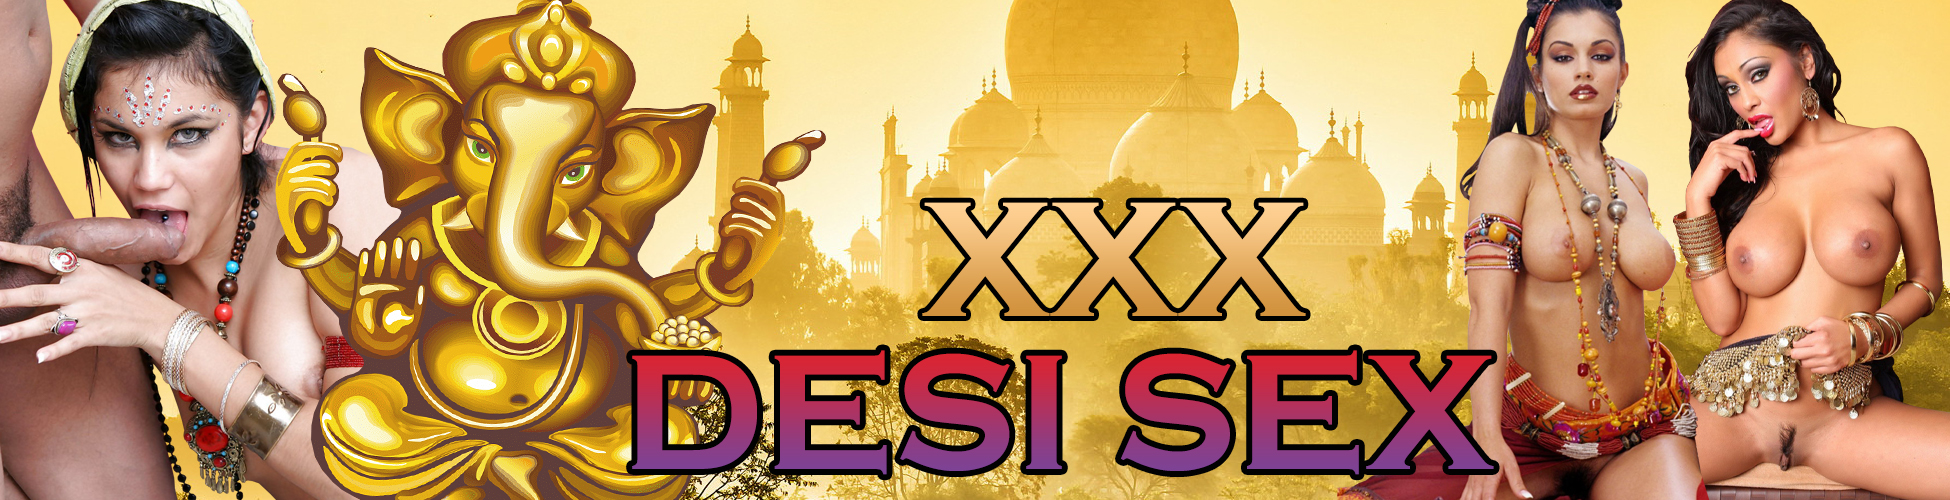 Xxx Daise H D Sex - XXX Desi Sex â¤ï¸ï¸ Hot HD Hindi Porn